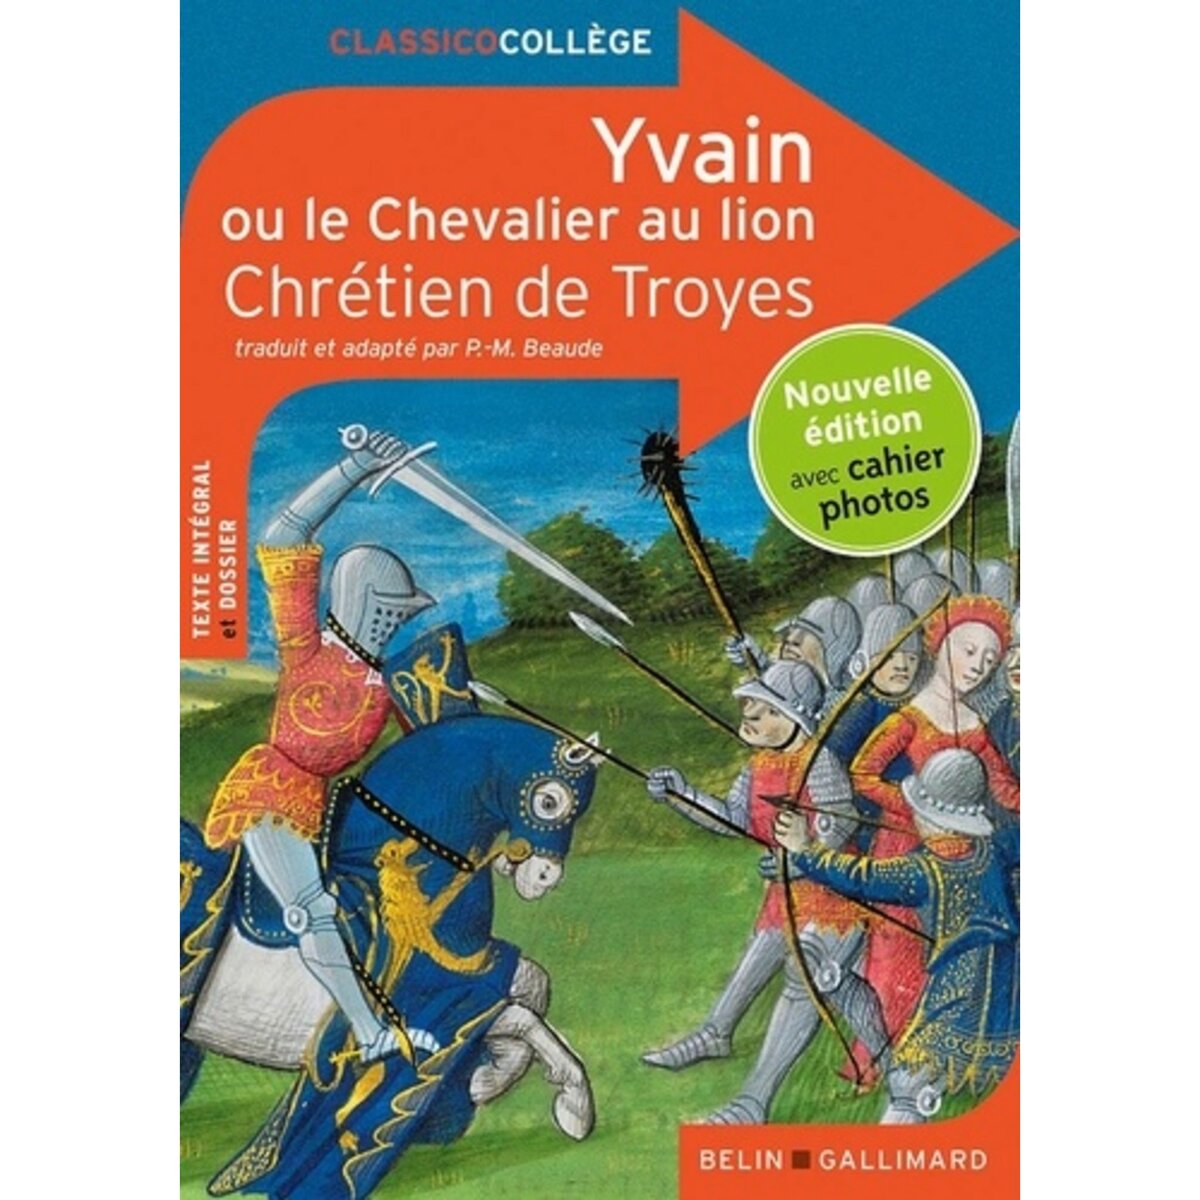  YVAIN OU LE CHEVALIER AU LION, Chrétien de Troyes